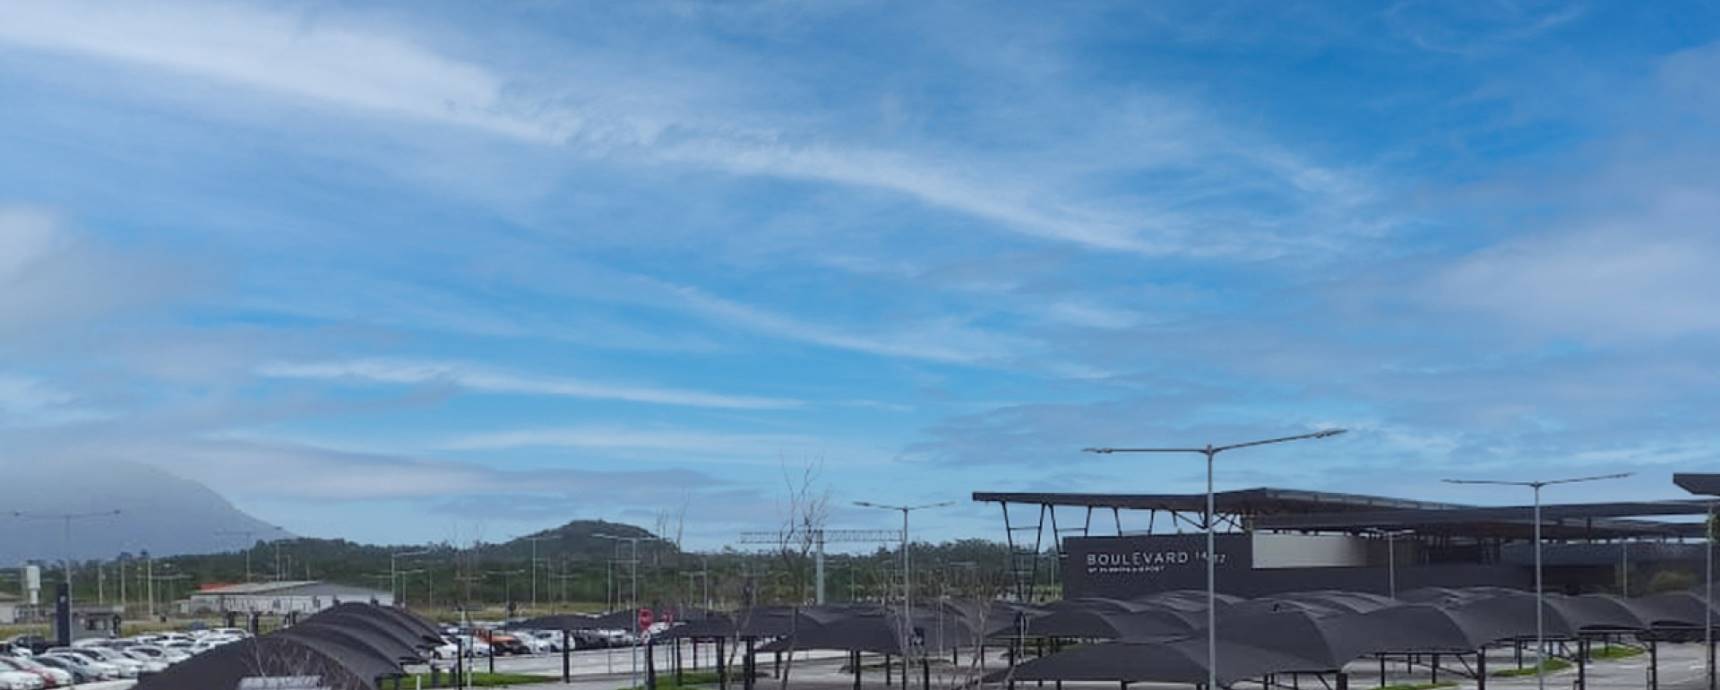 Der Flughafen Florianópolis verfügt jetzt über VIP-Parkplätze